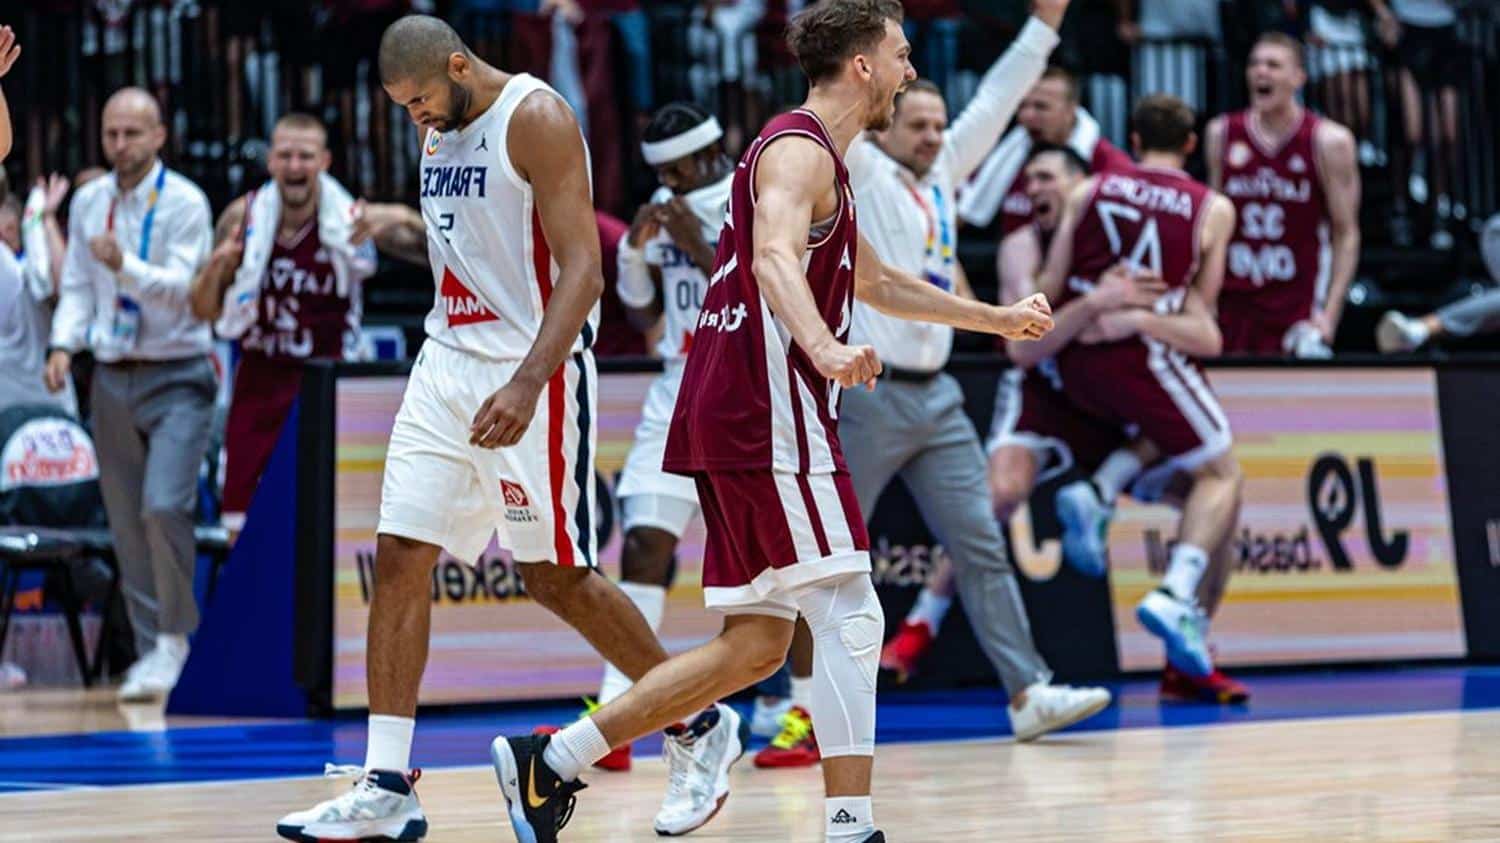 Humilié au mondial de Basket, Nicolas Batum (capitaine des Bleus) fracasse tout : « J’en ai rien à foutre »